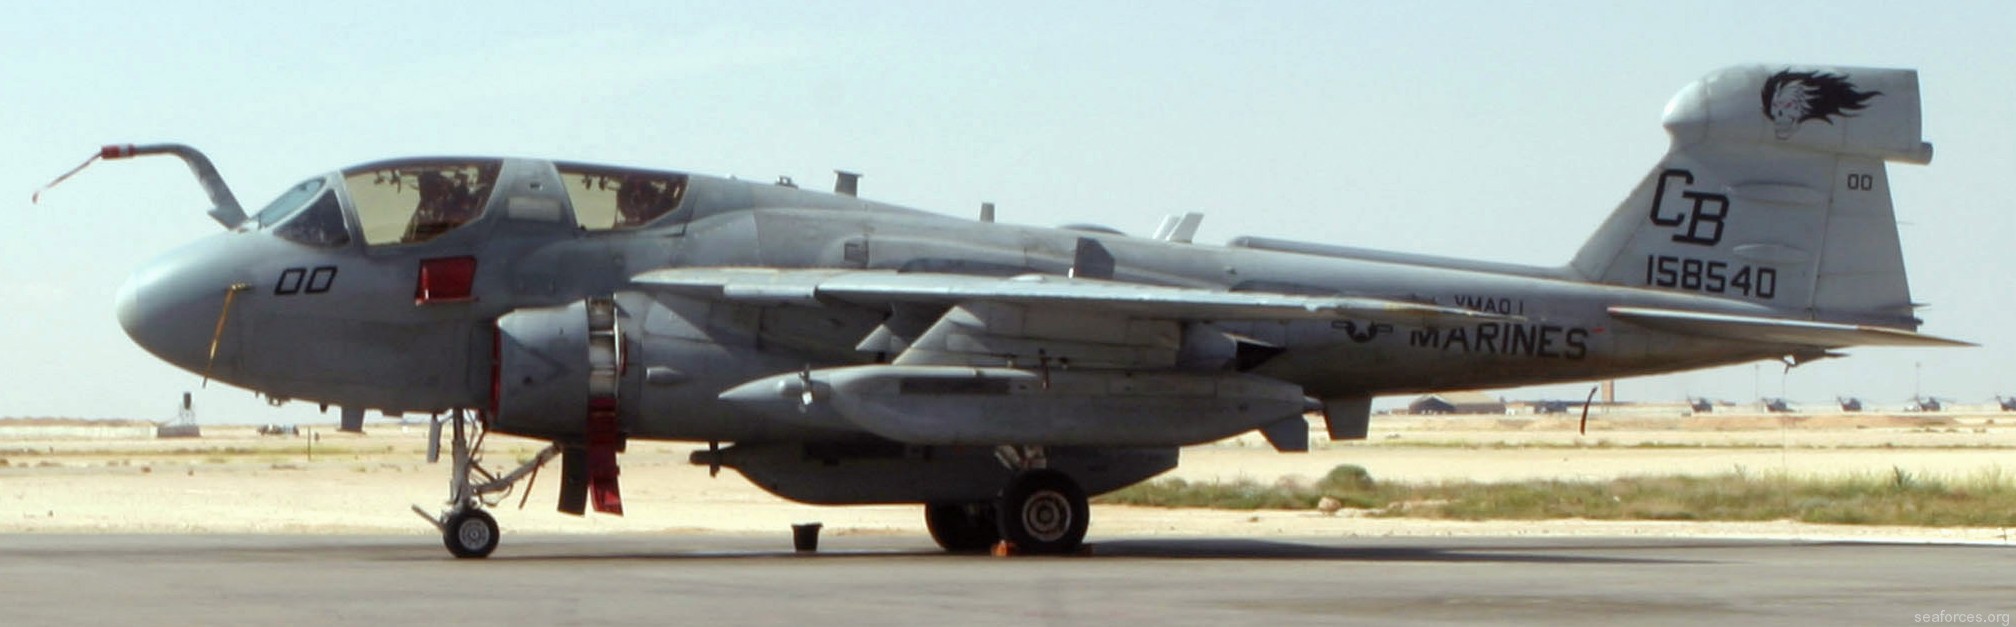 vmaq-1 banshees ea-6b prowler marine tactical electronic warfare squadron usmc 95 al asad iraq